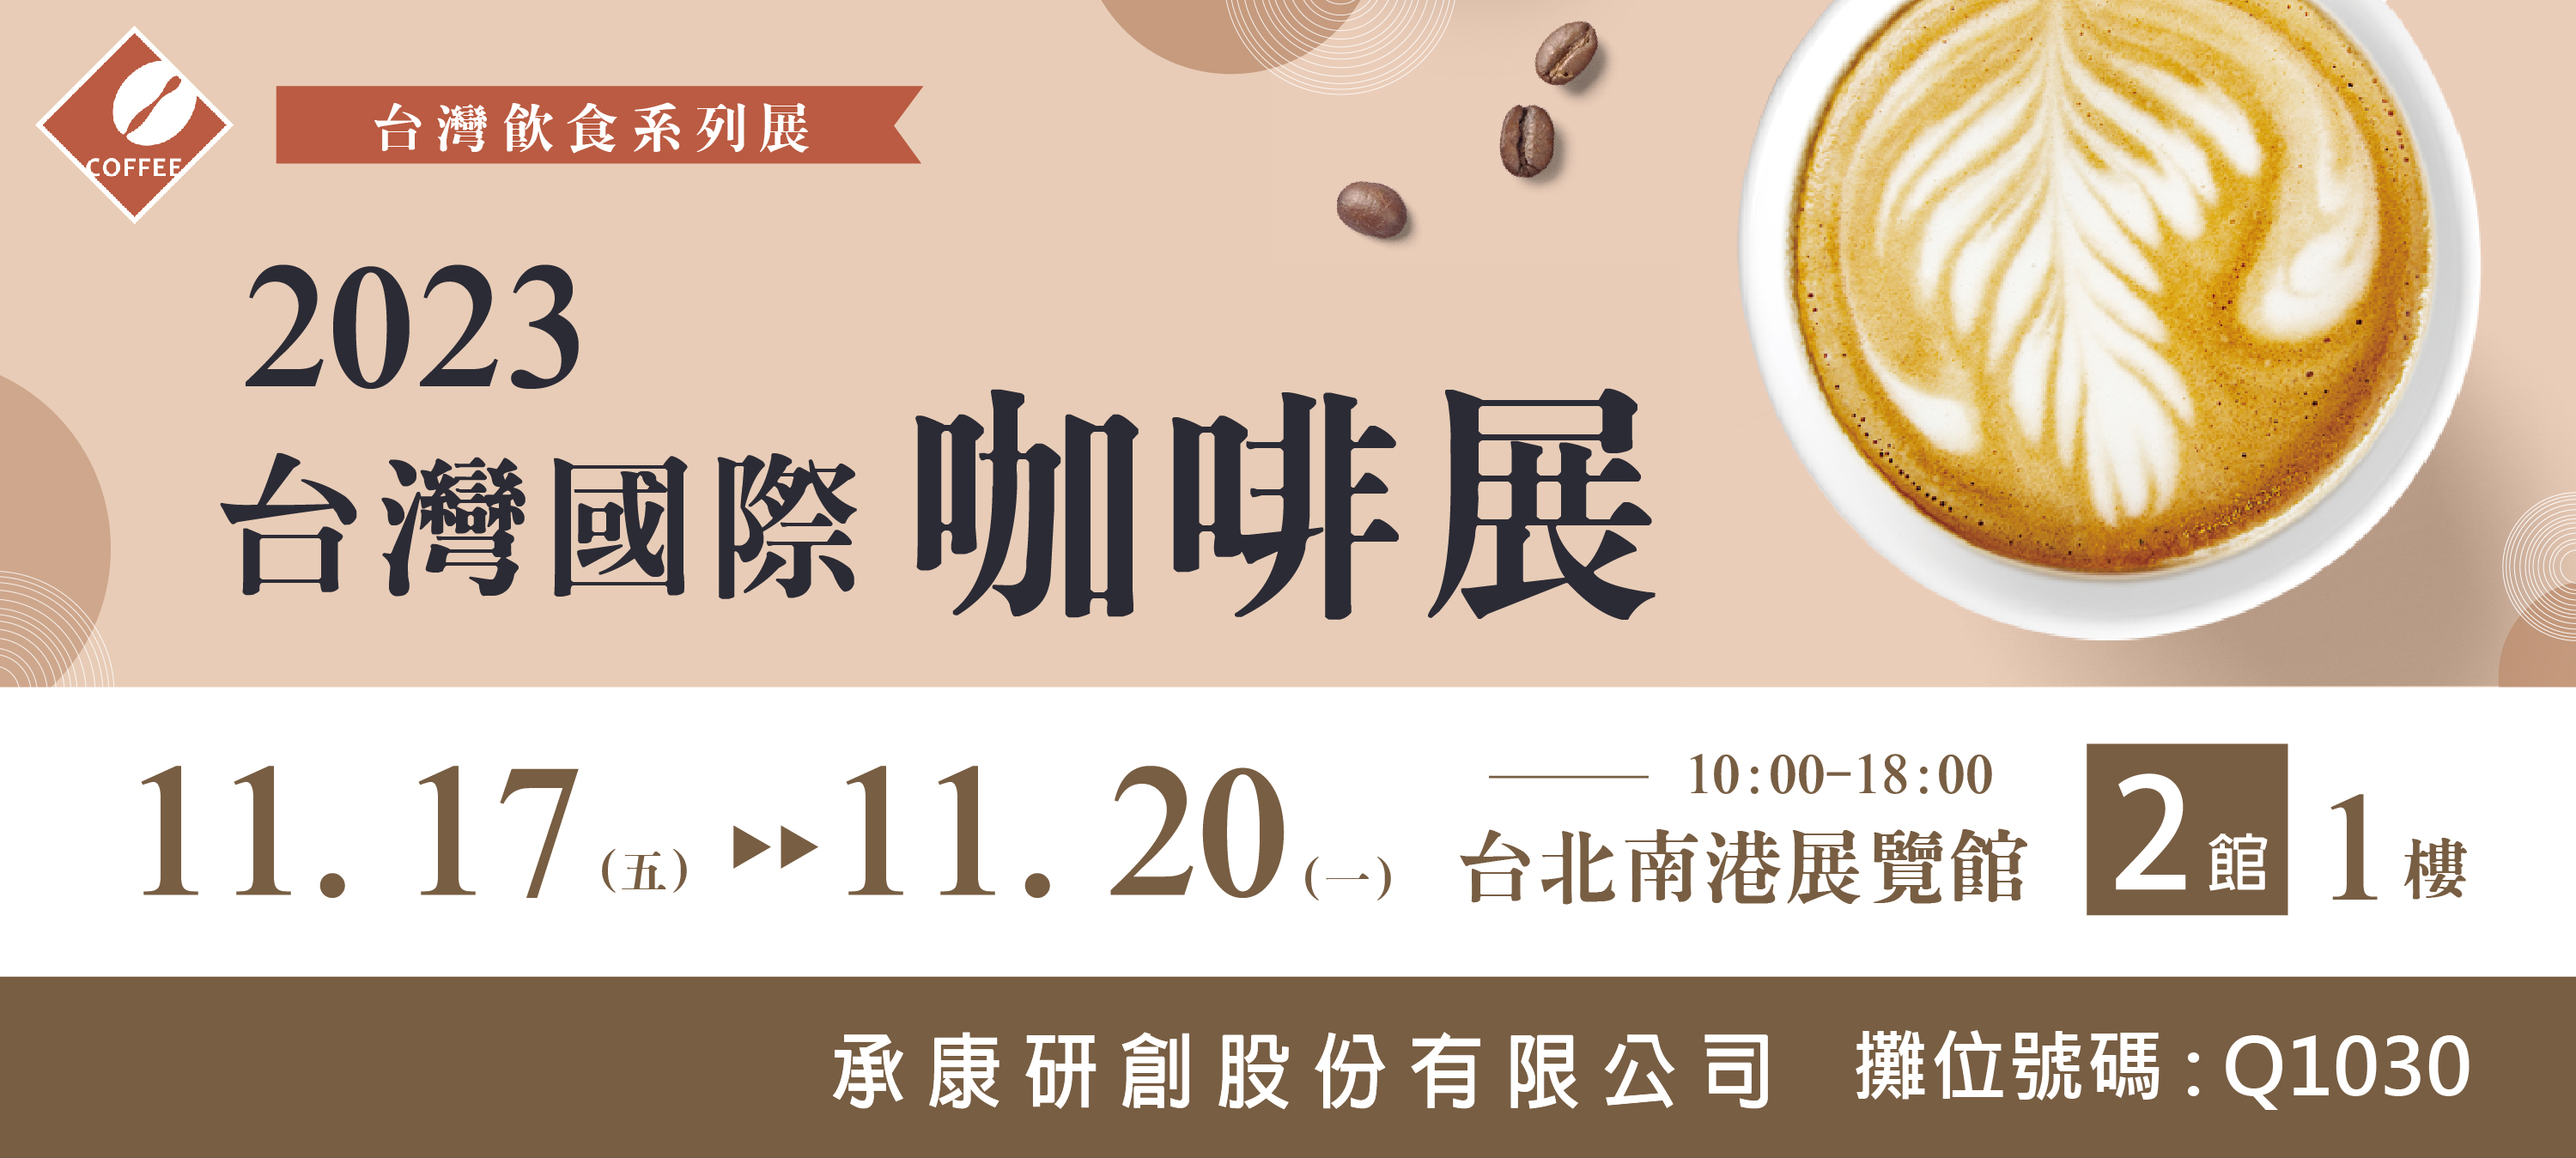 2023國際咖啡展 - 2023年11月17日(五) ~11月20日(一) 